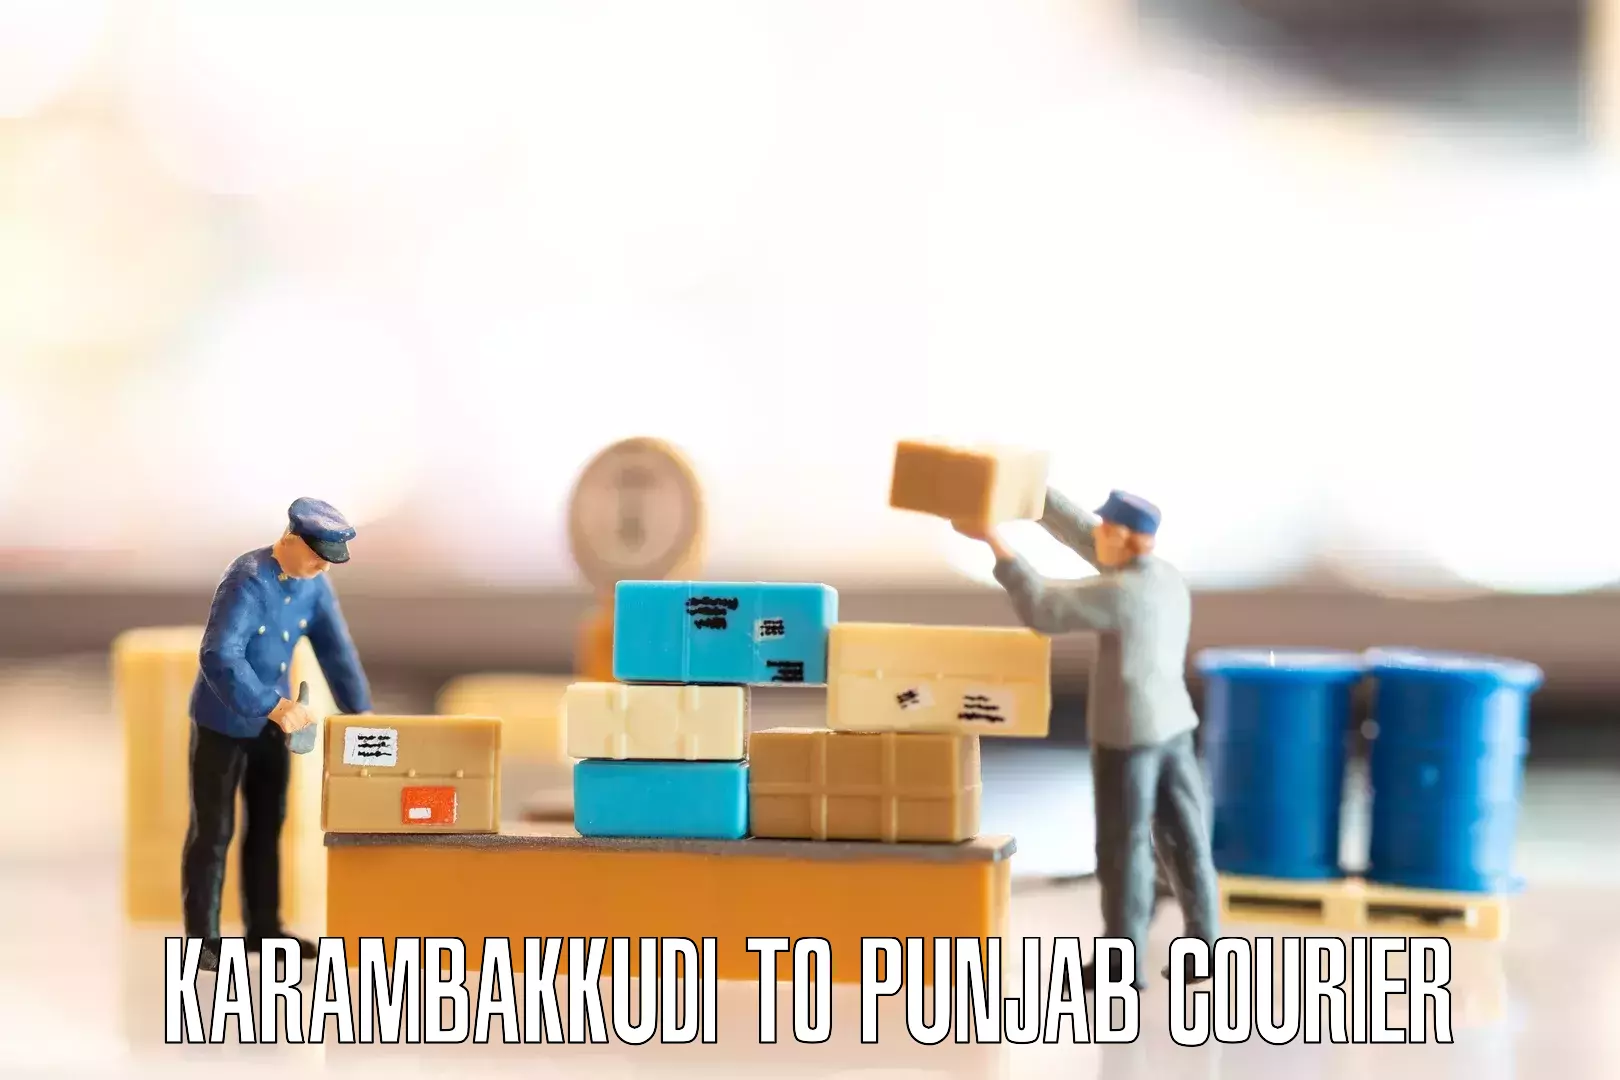 Efficient furniture movers Karambakkudi to Bhadaur